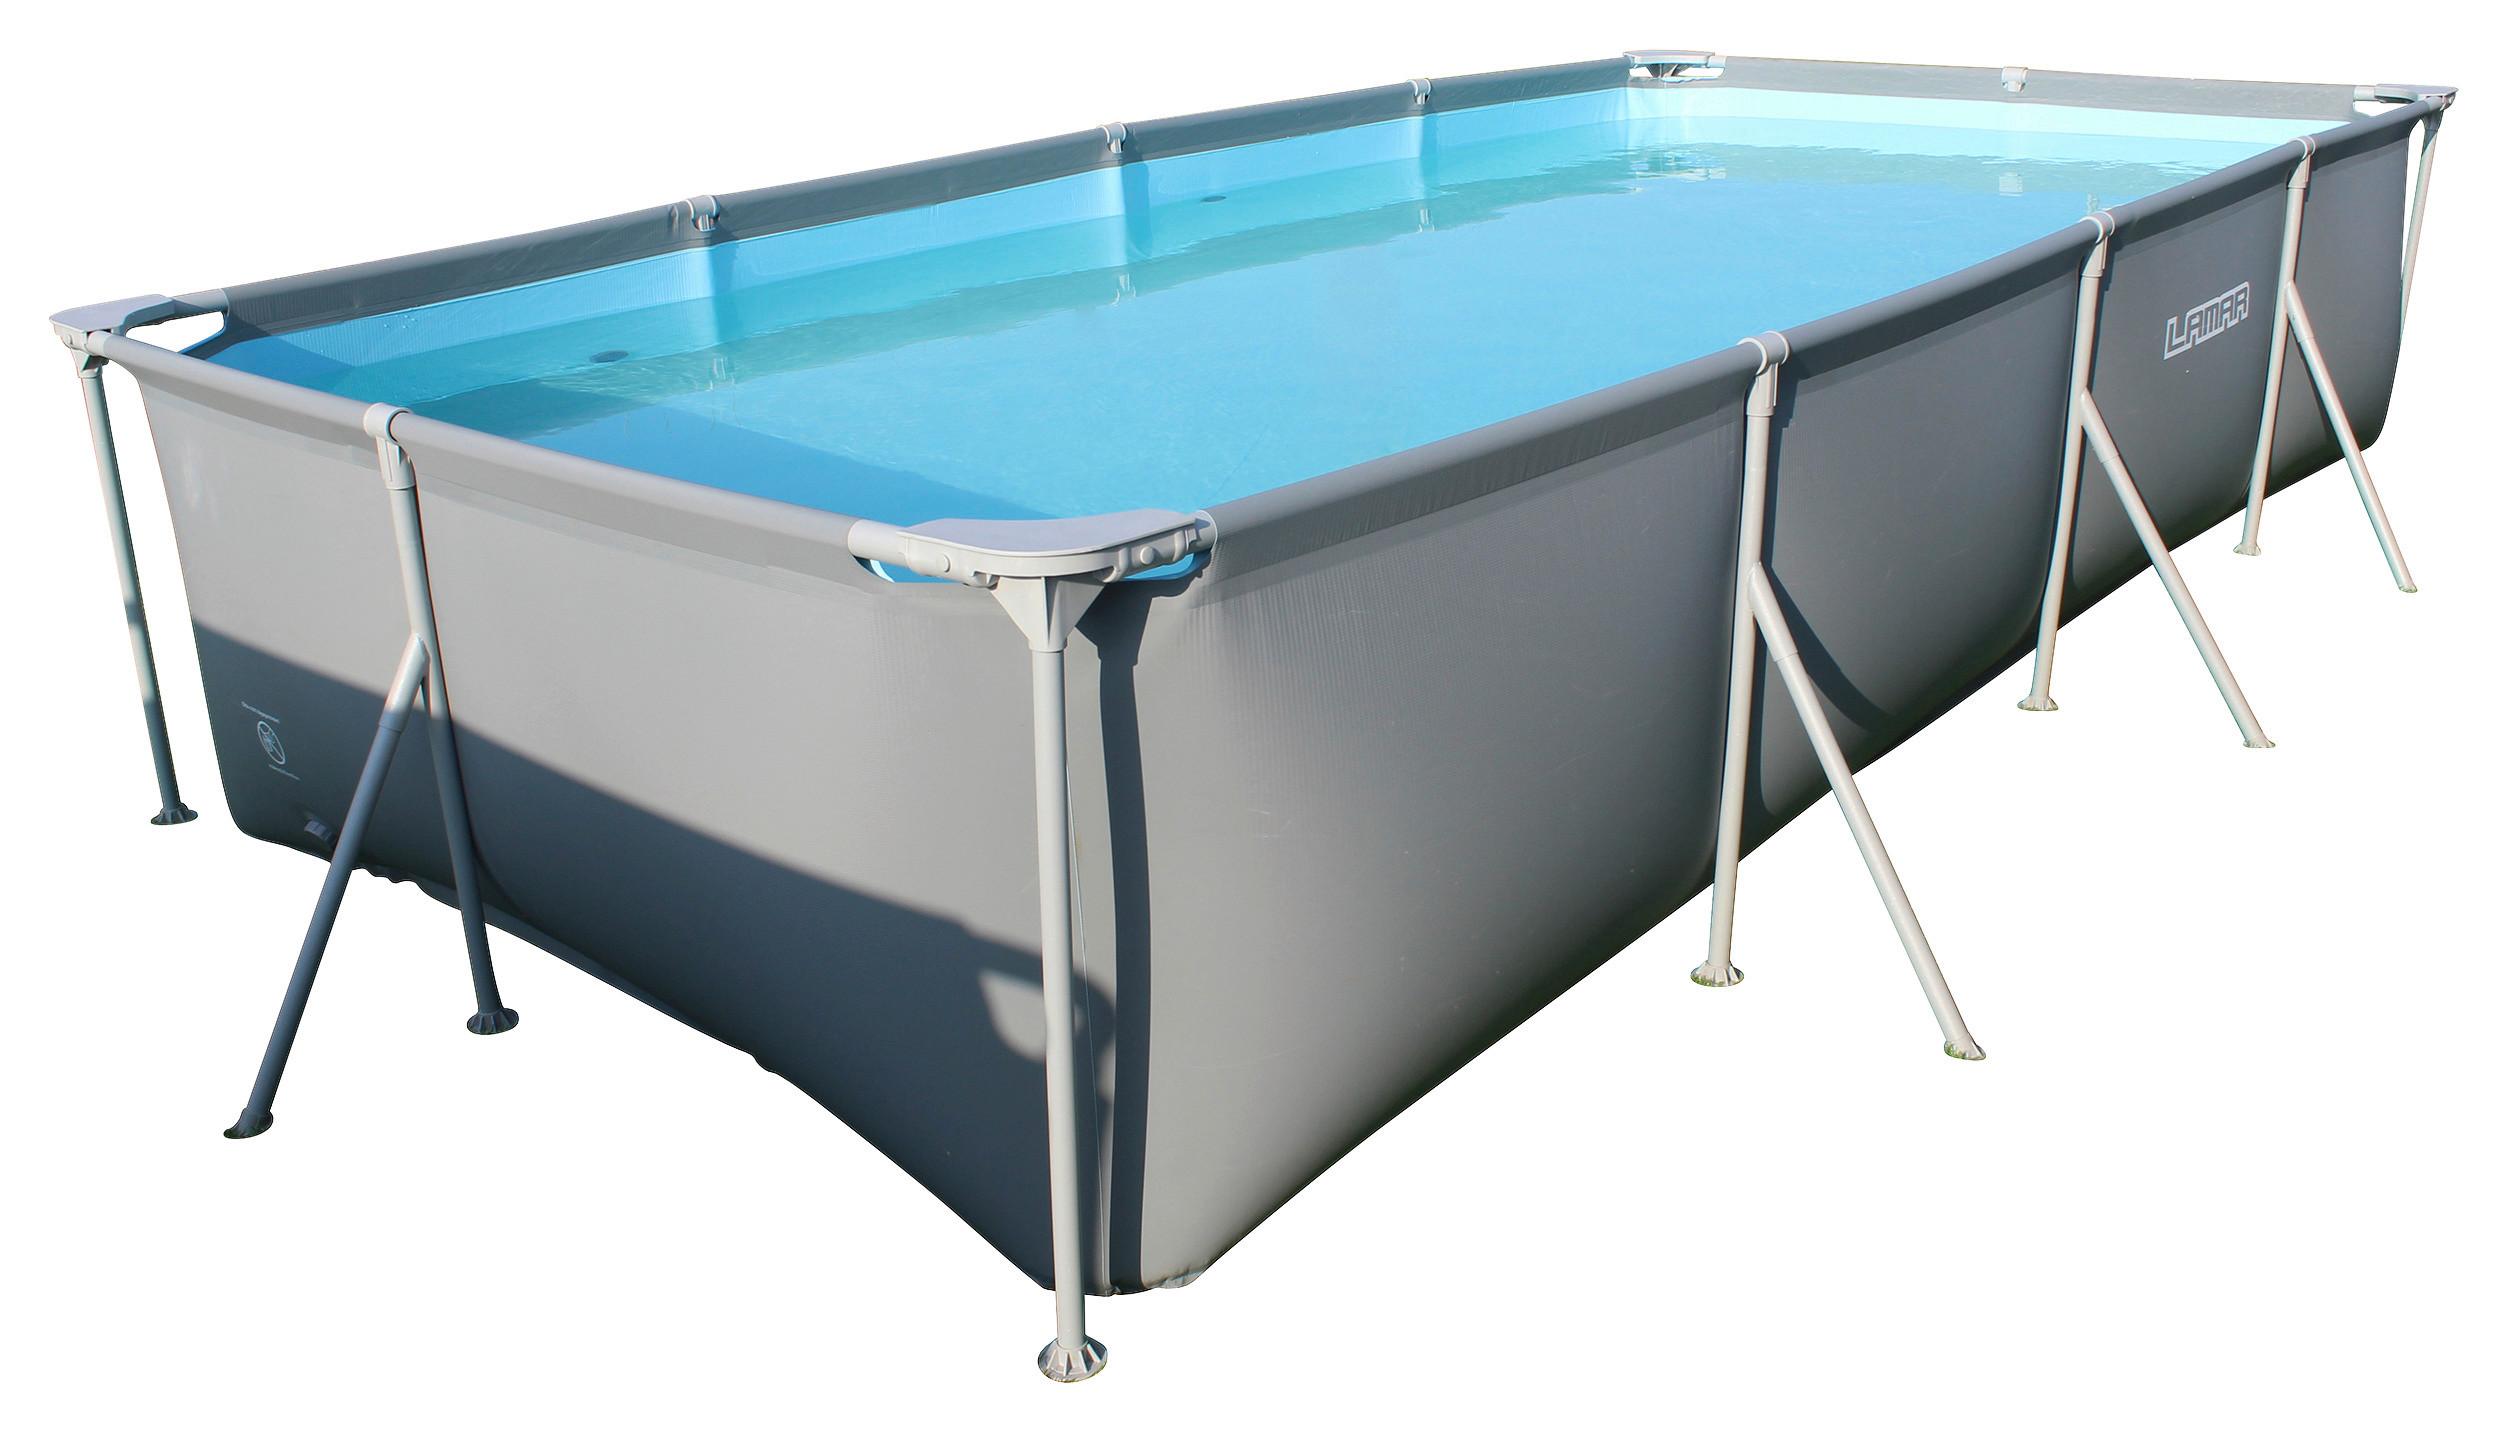 Pool-Set Poolset 99, 5-teilig - Blau/Grau, KONVENTIONELL, Kunststoff/Metall (404/201/76cm)